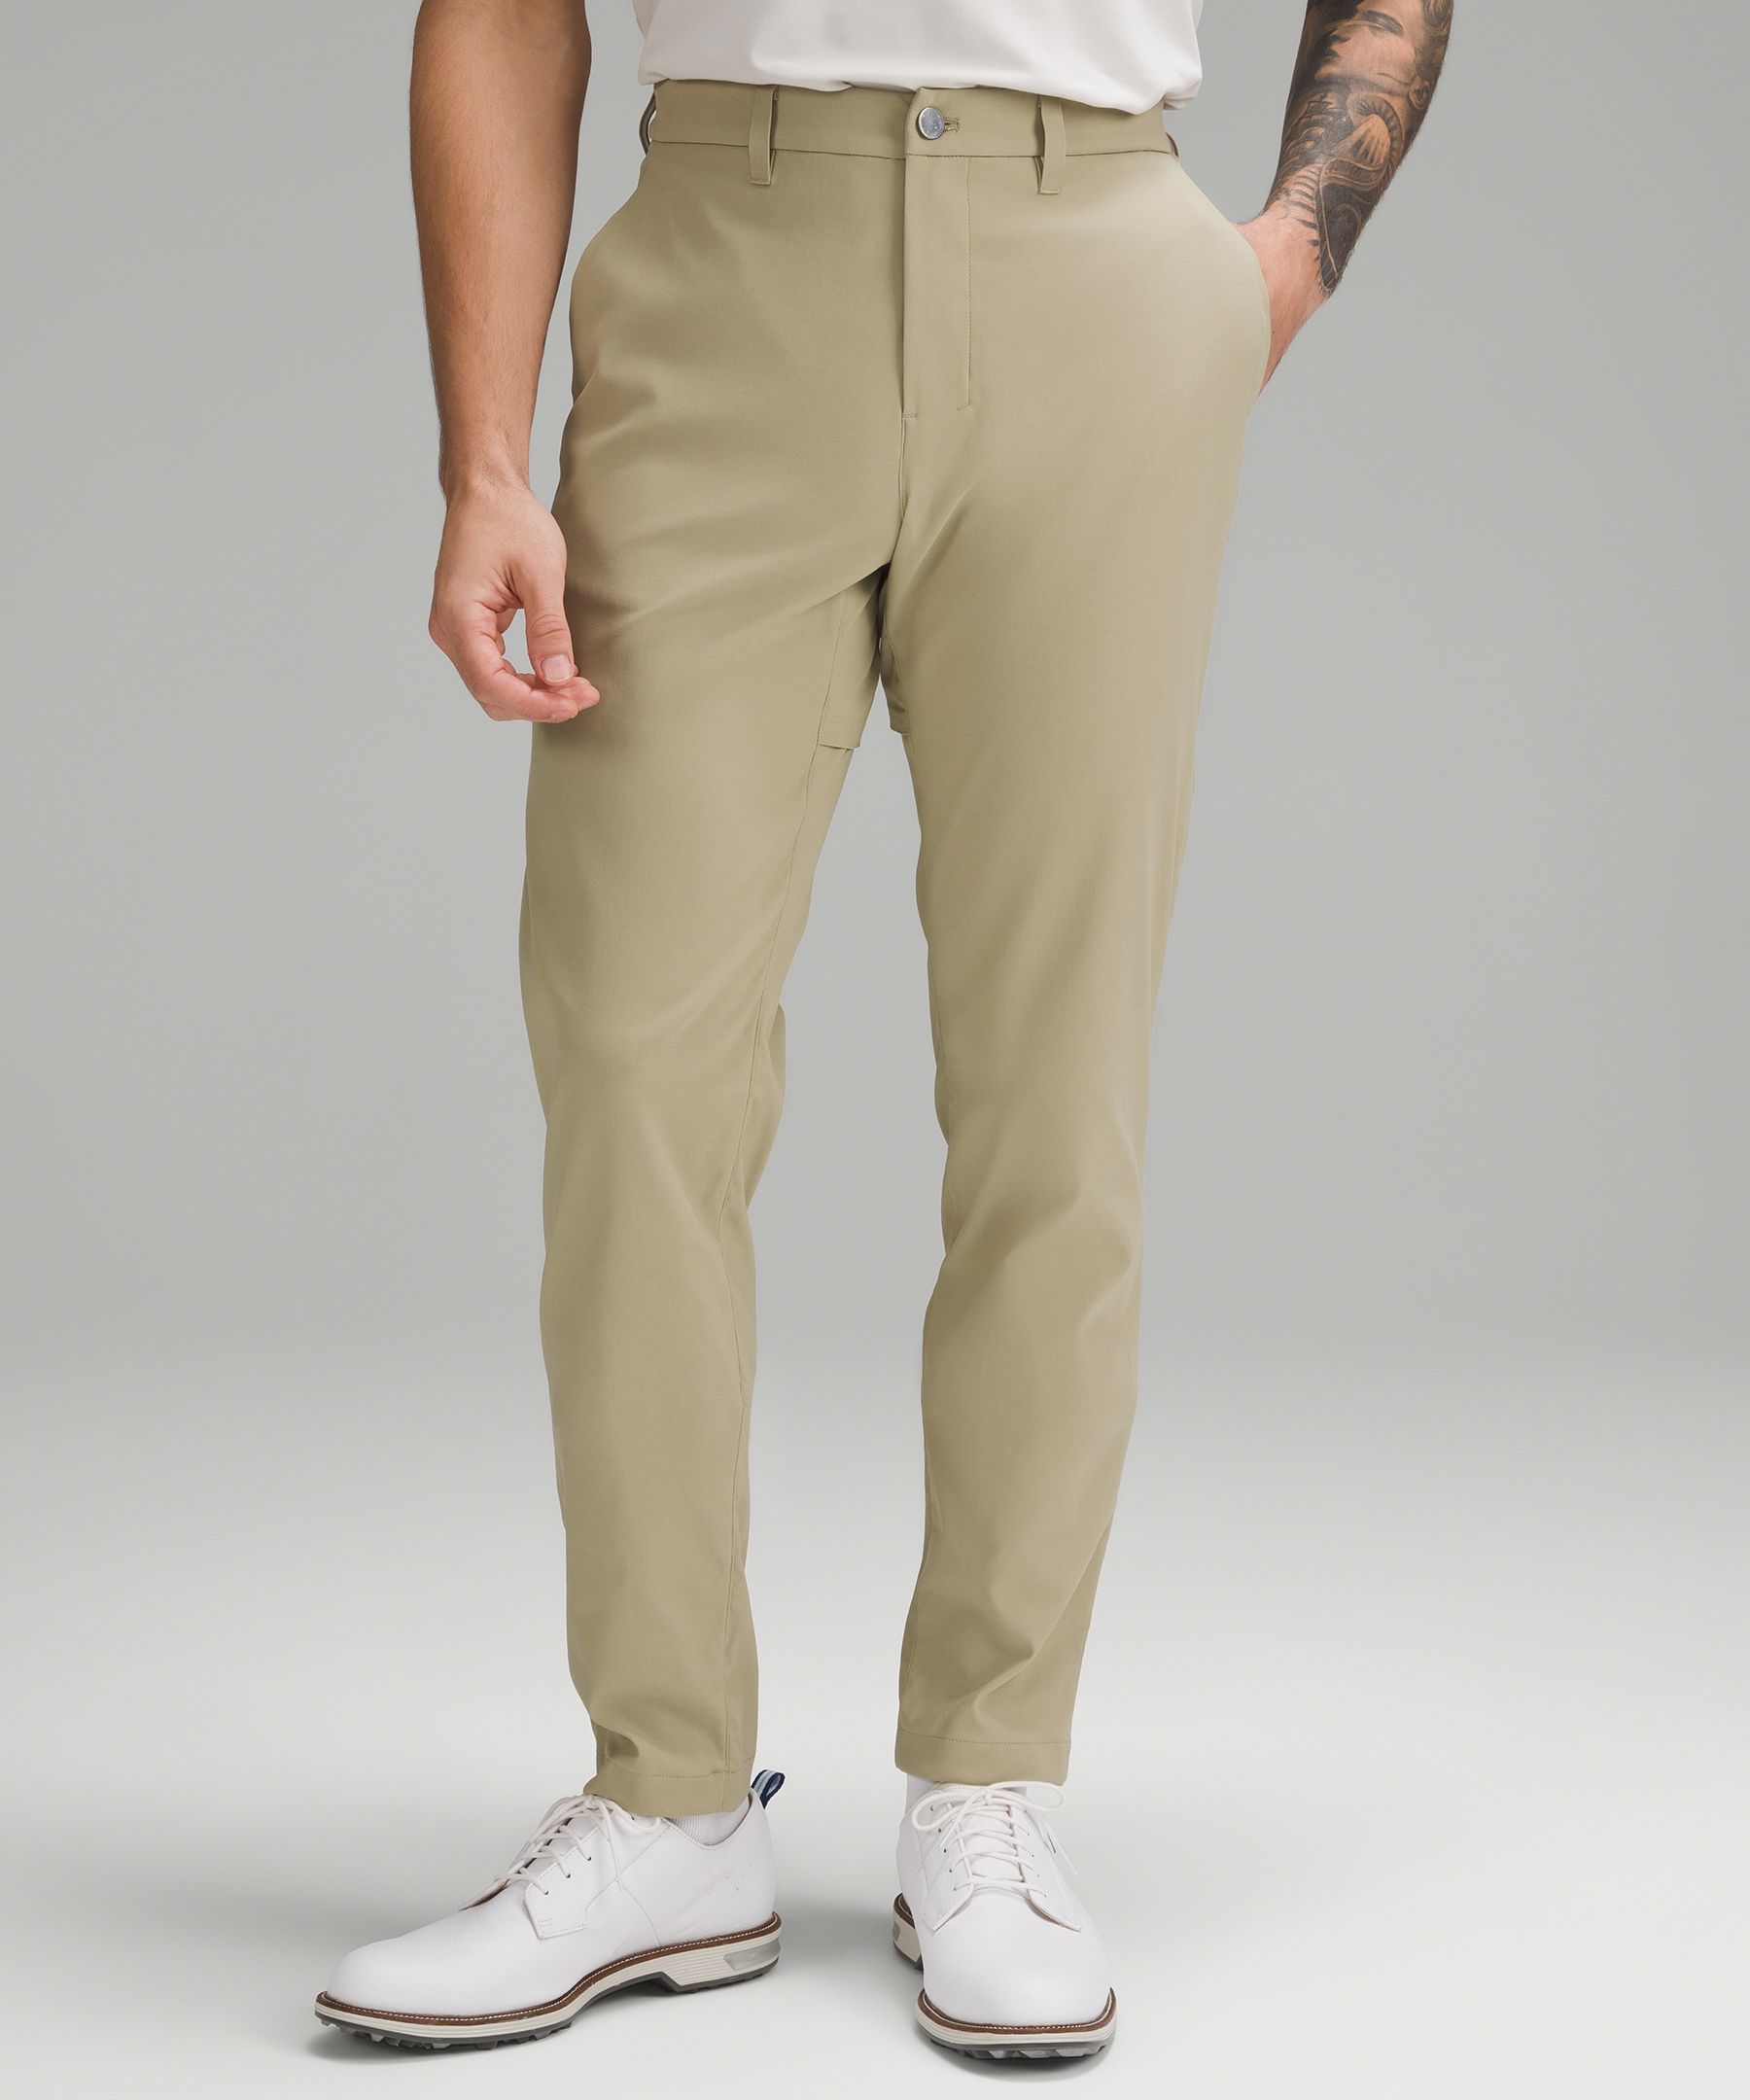 Lululemon Abc Slim-fit Golf Trousers 32"l